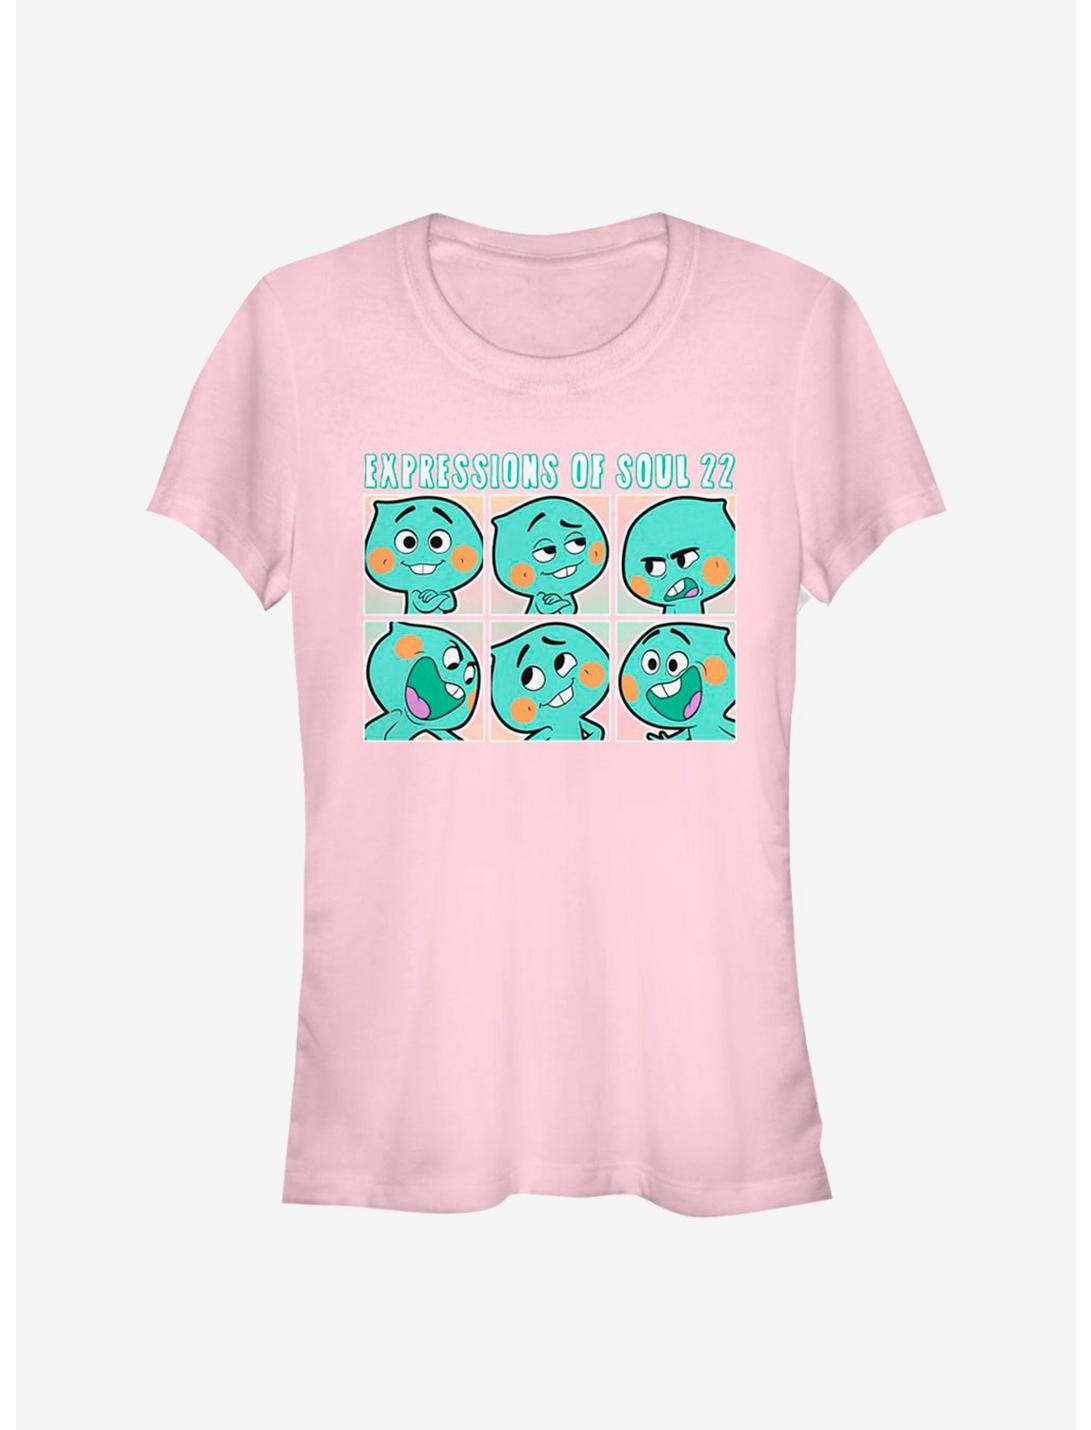 Disney Pixar Soul Expressions Of Soul 22 Girls T-Shirt, LIGHT PINK, hi-res